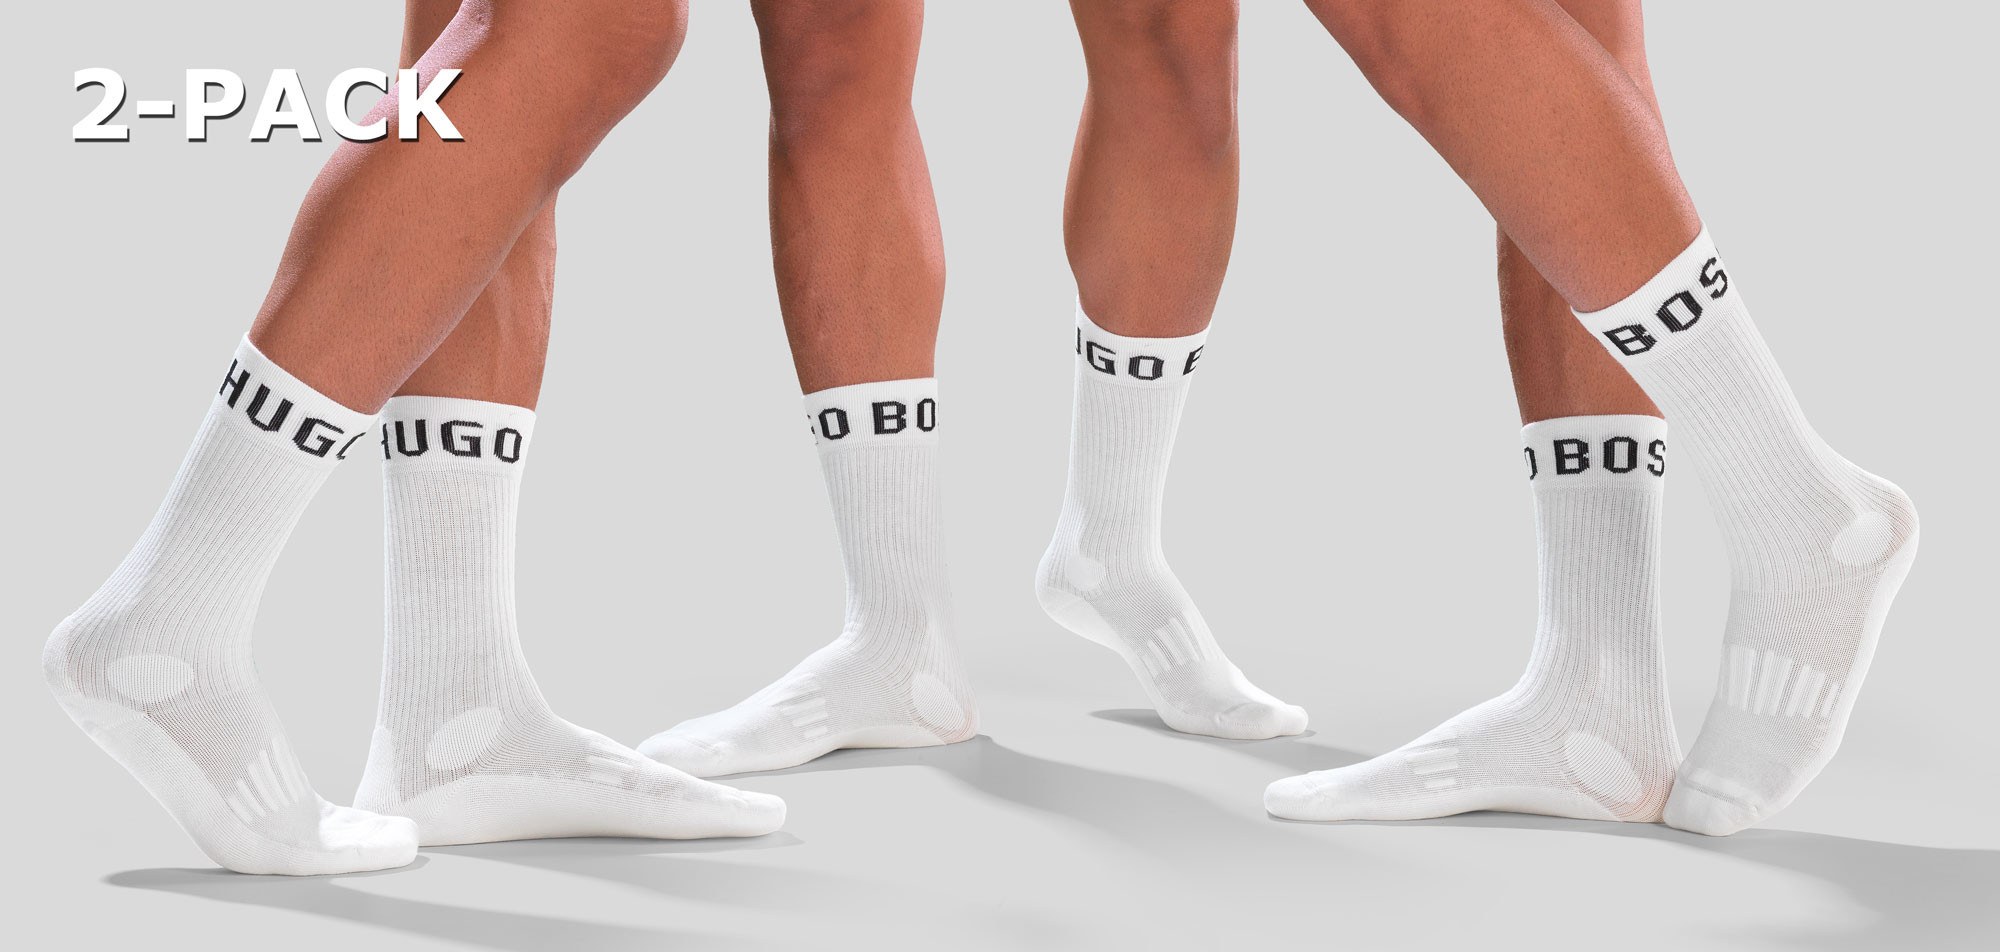 Boss RS Sport Socks 2-Pack 454, color Nee